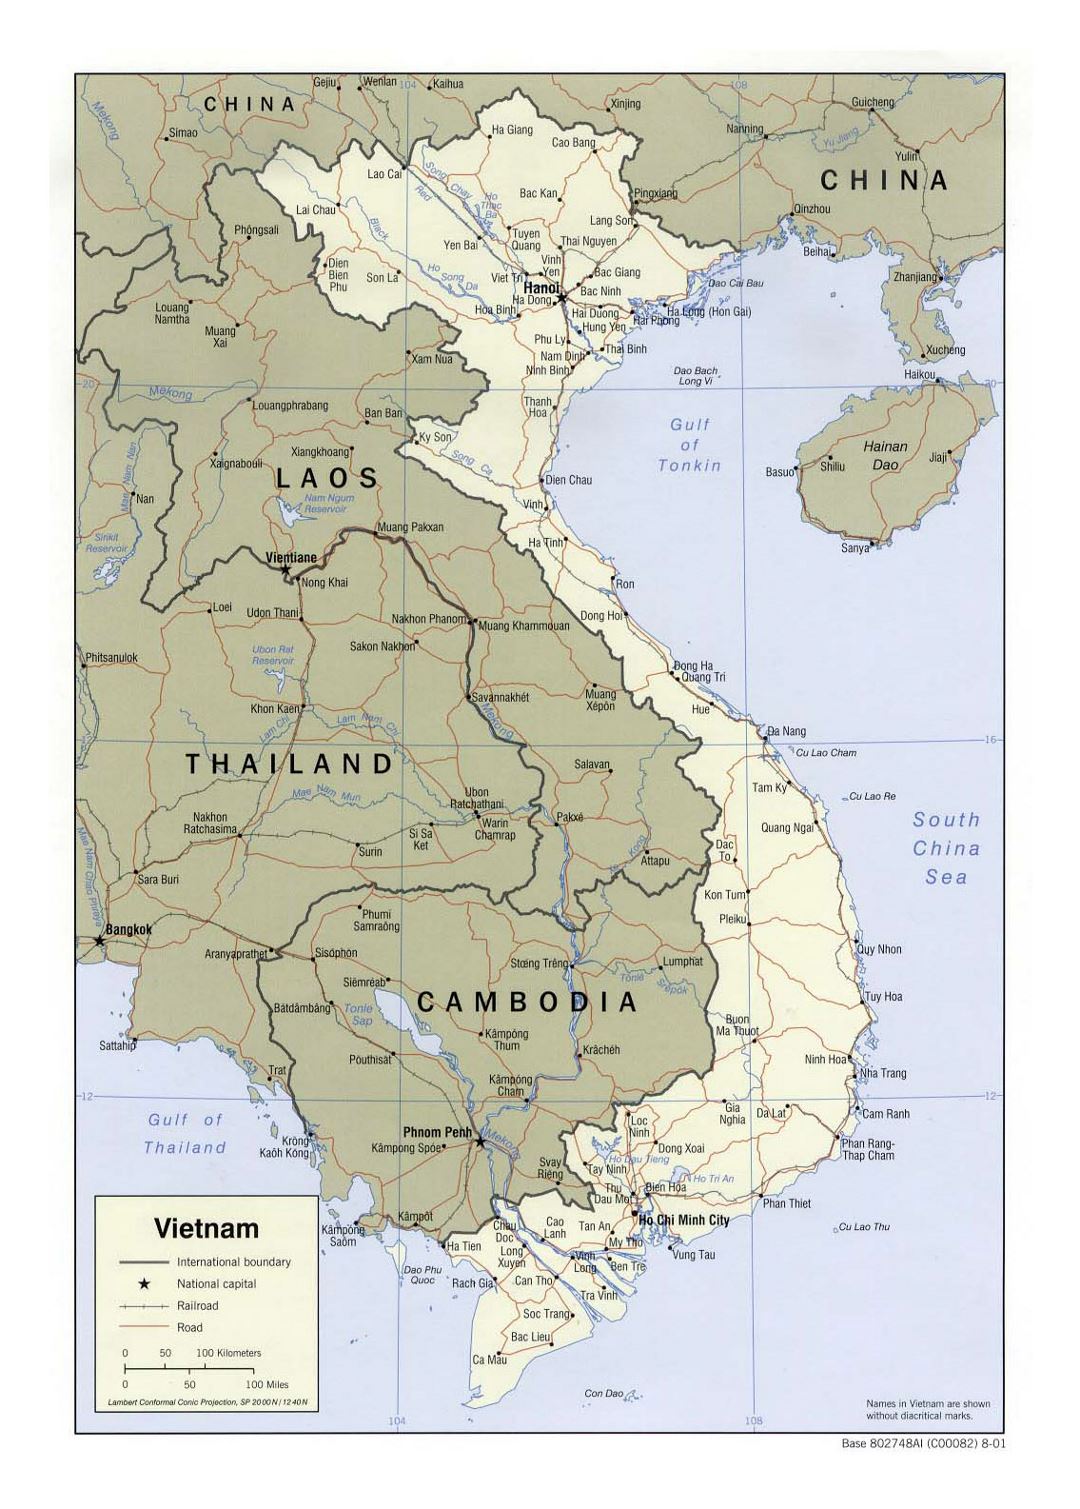 Детальная политическая карта Вьетнама с дорогами, железными дорогами и крупными городами - 2001